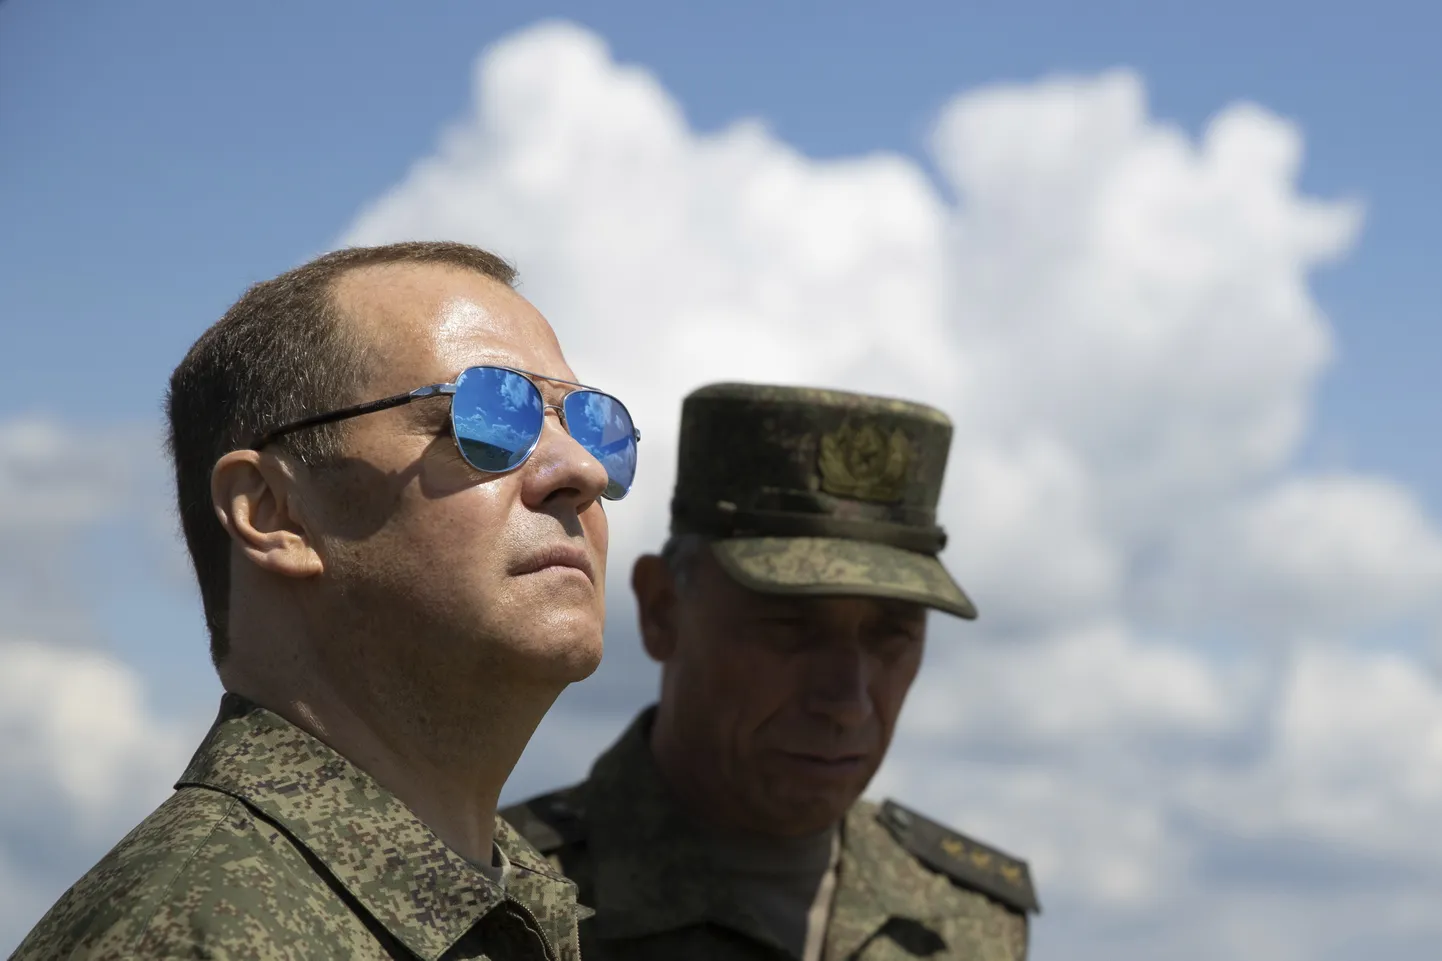 Venemaa endine president Medvedev käis Venemaal Totsi sõdurite väljaõpet vaatamas